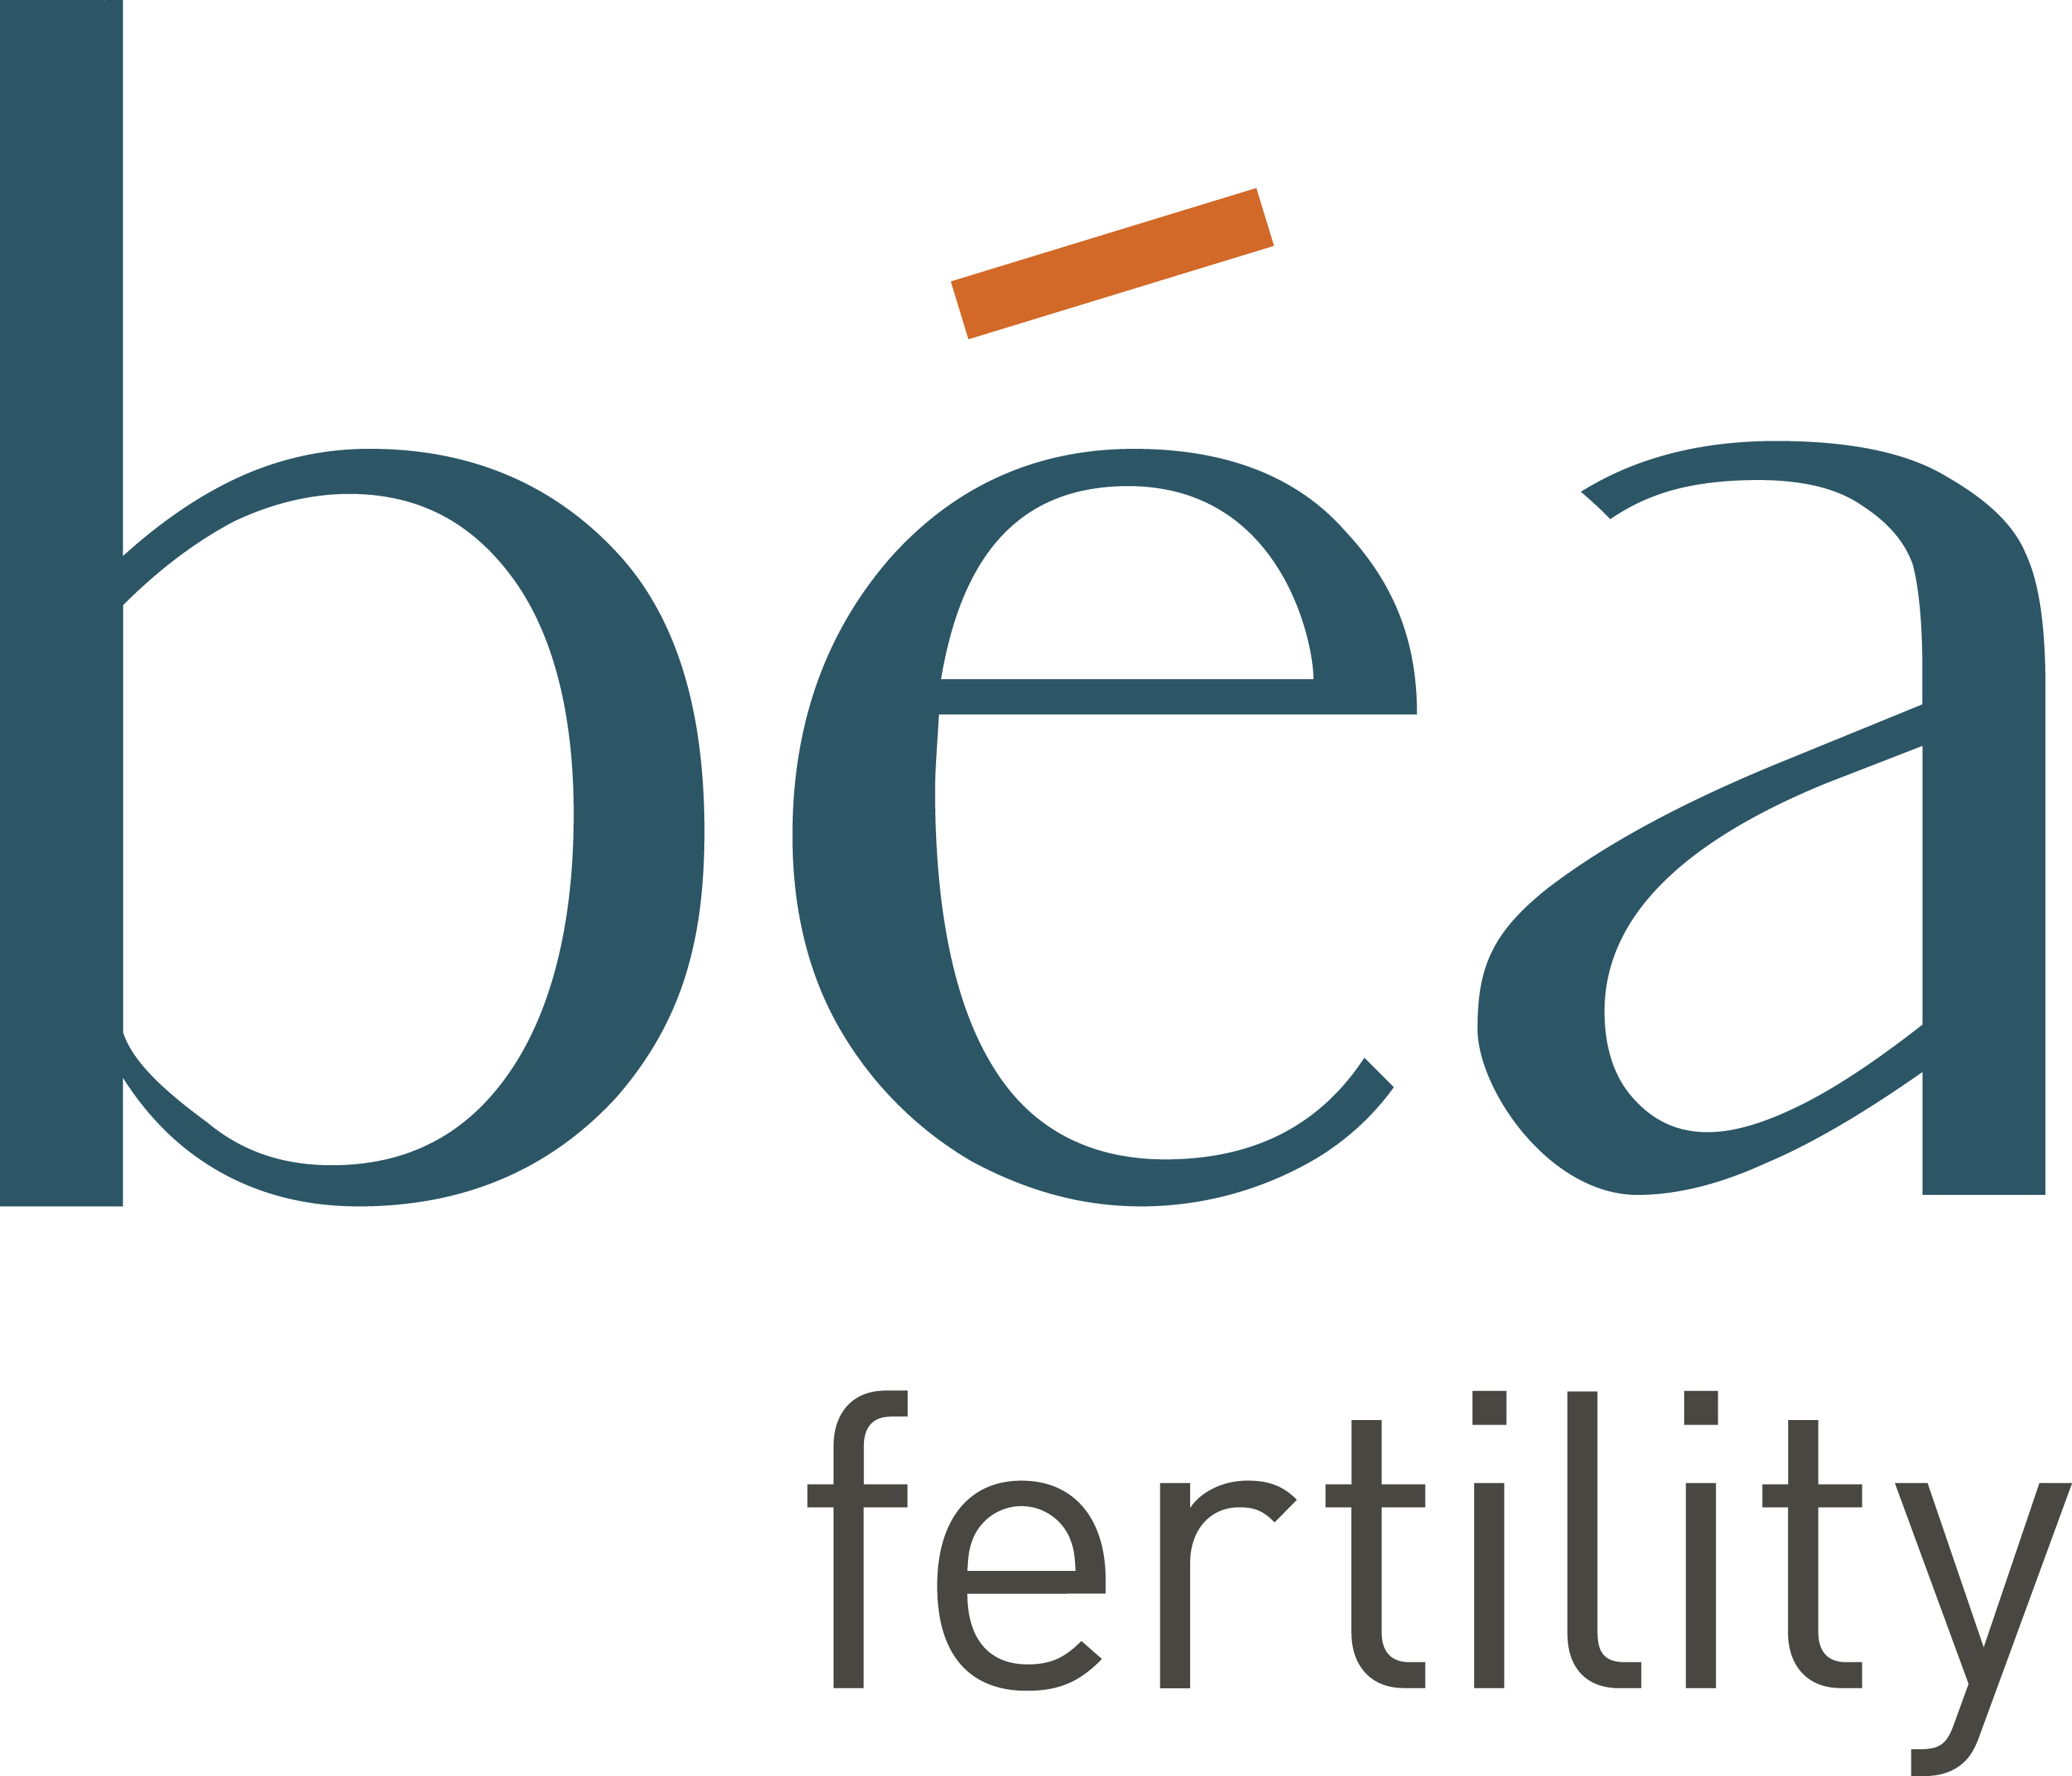 Béa Fertility